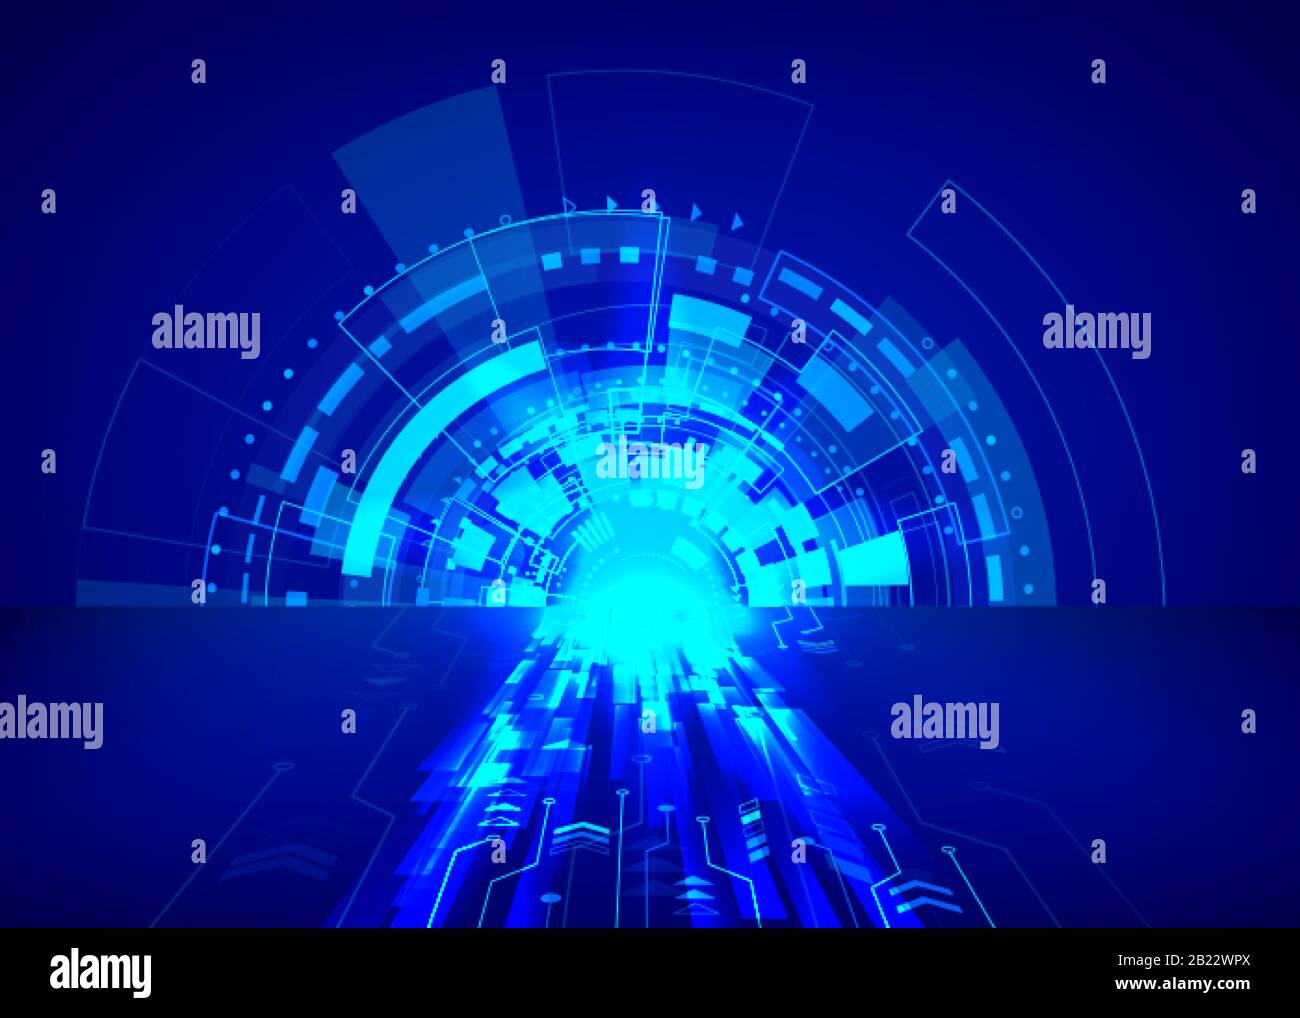 Abstrakter Hintergrund der Sci-Fi-Technologie. Futuristisches Cyber-System in blauen Farben. Hintergrundbild zur Geschäftstechnologie. Vektorgrafiken Stock Vektor